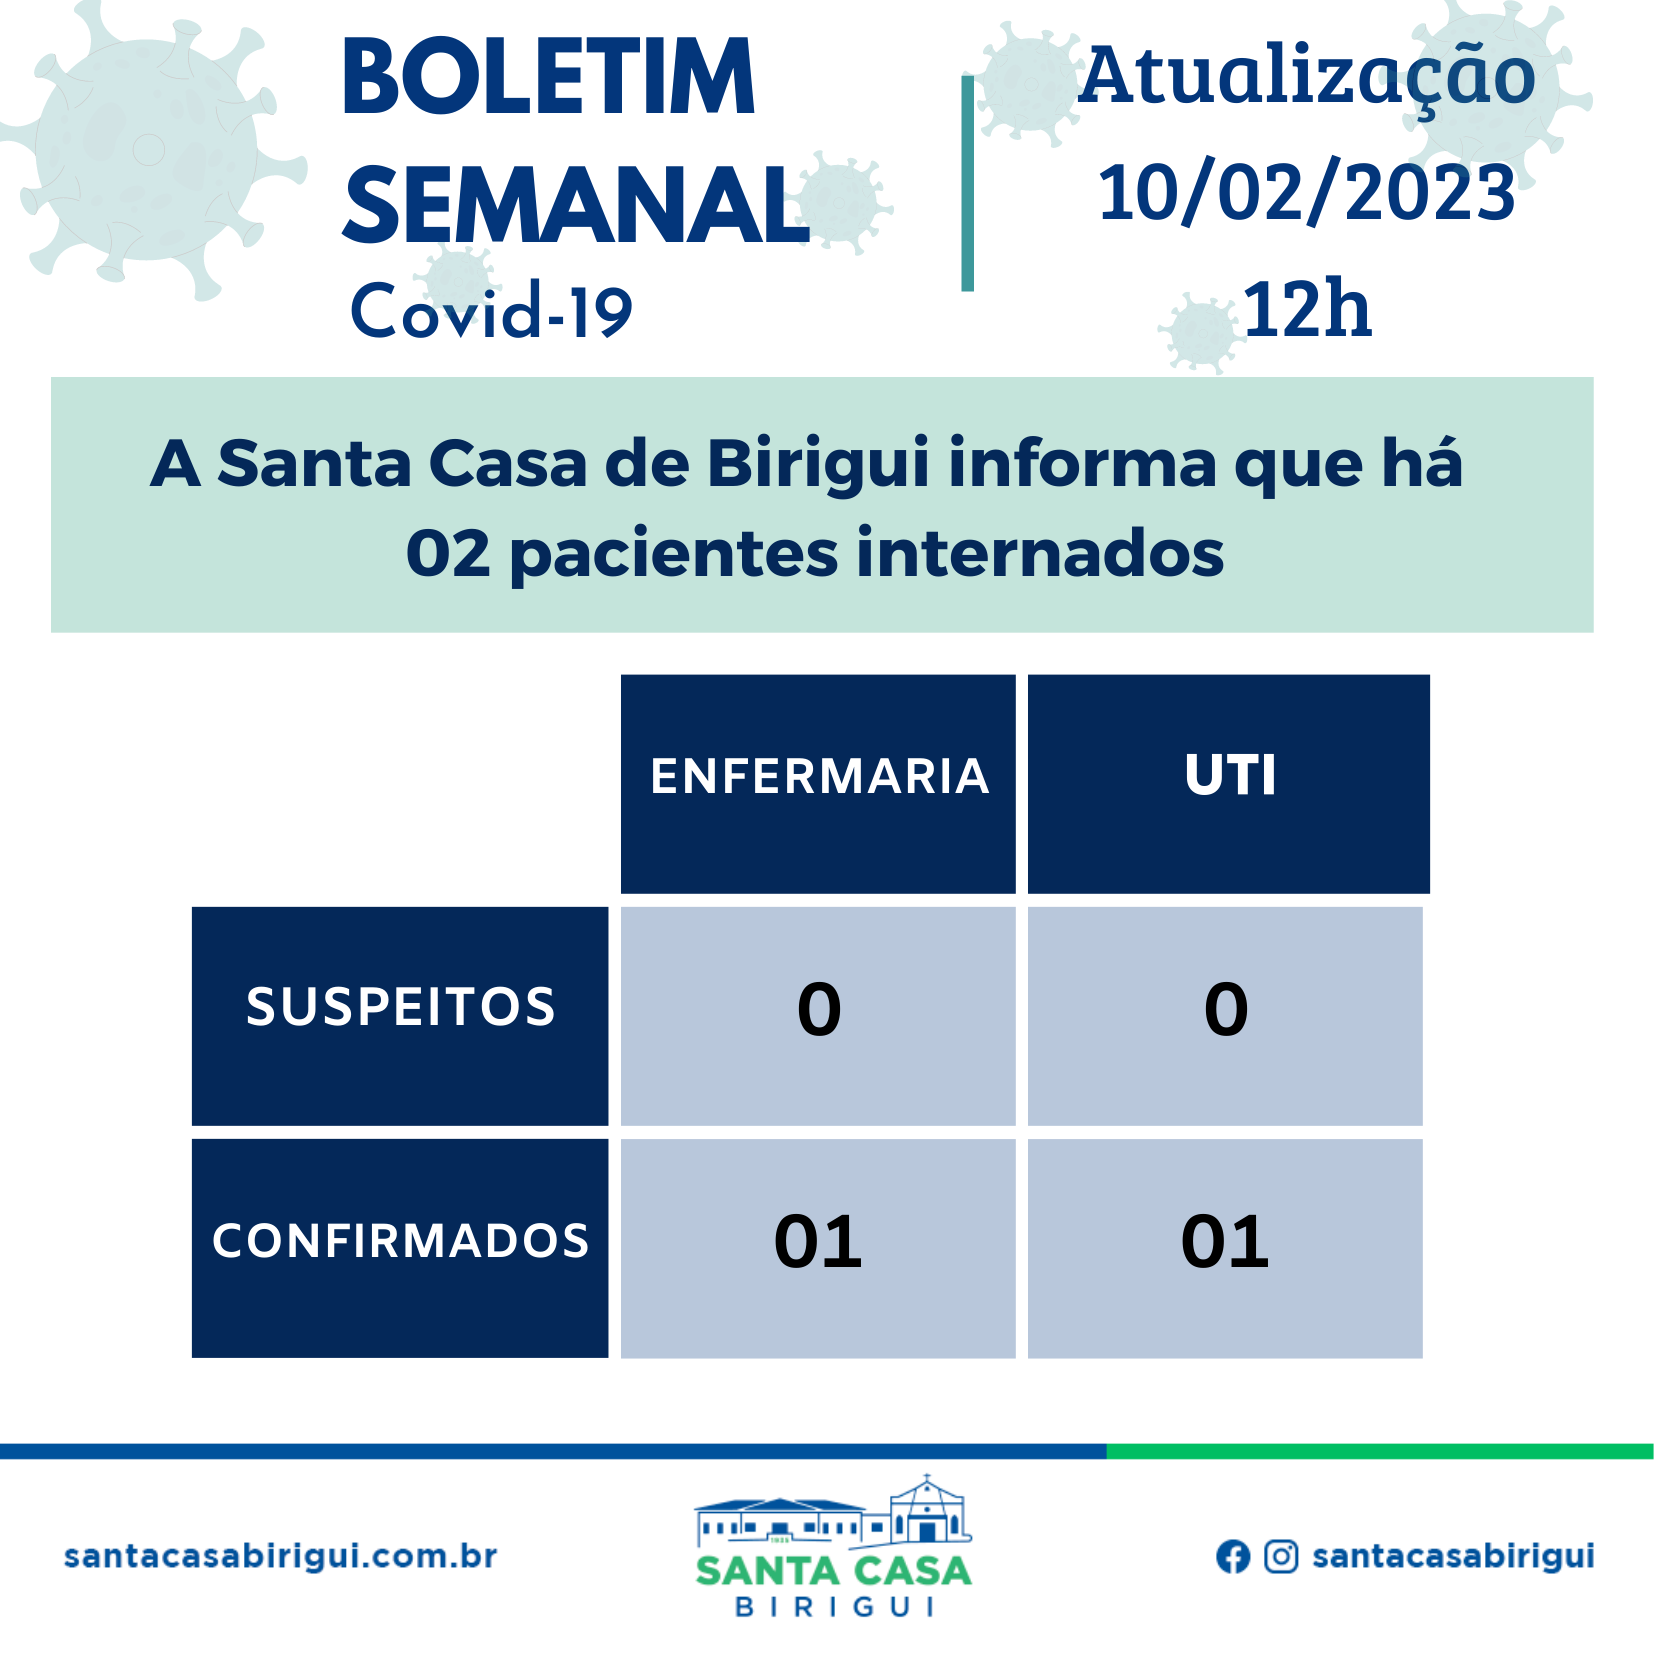 Boletim Informativo Semanal Covid-19 – Data de divulgação 10/02/2023